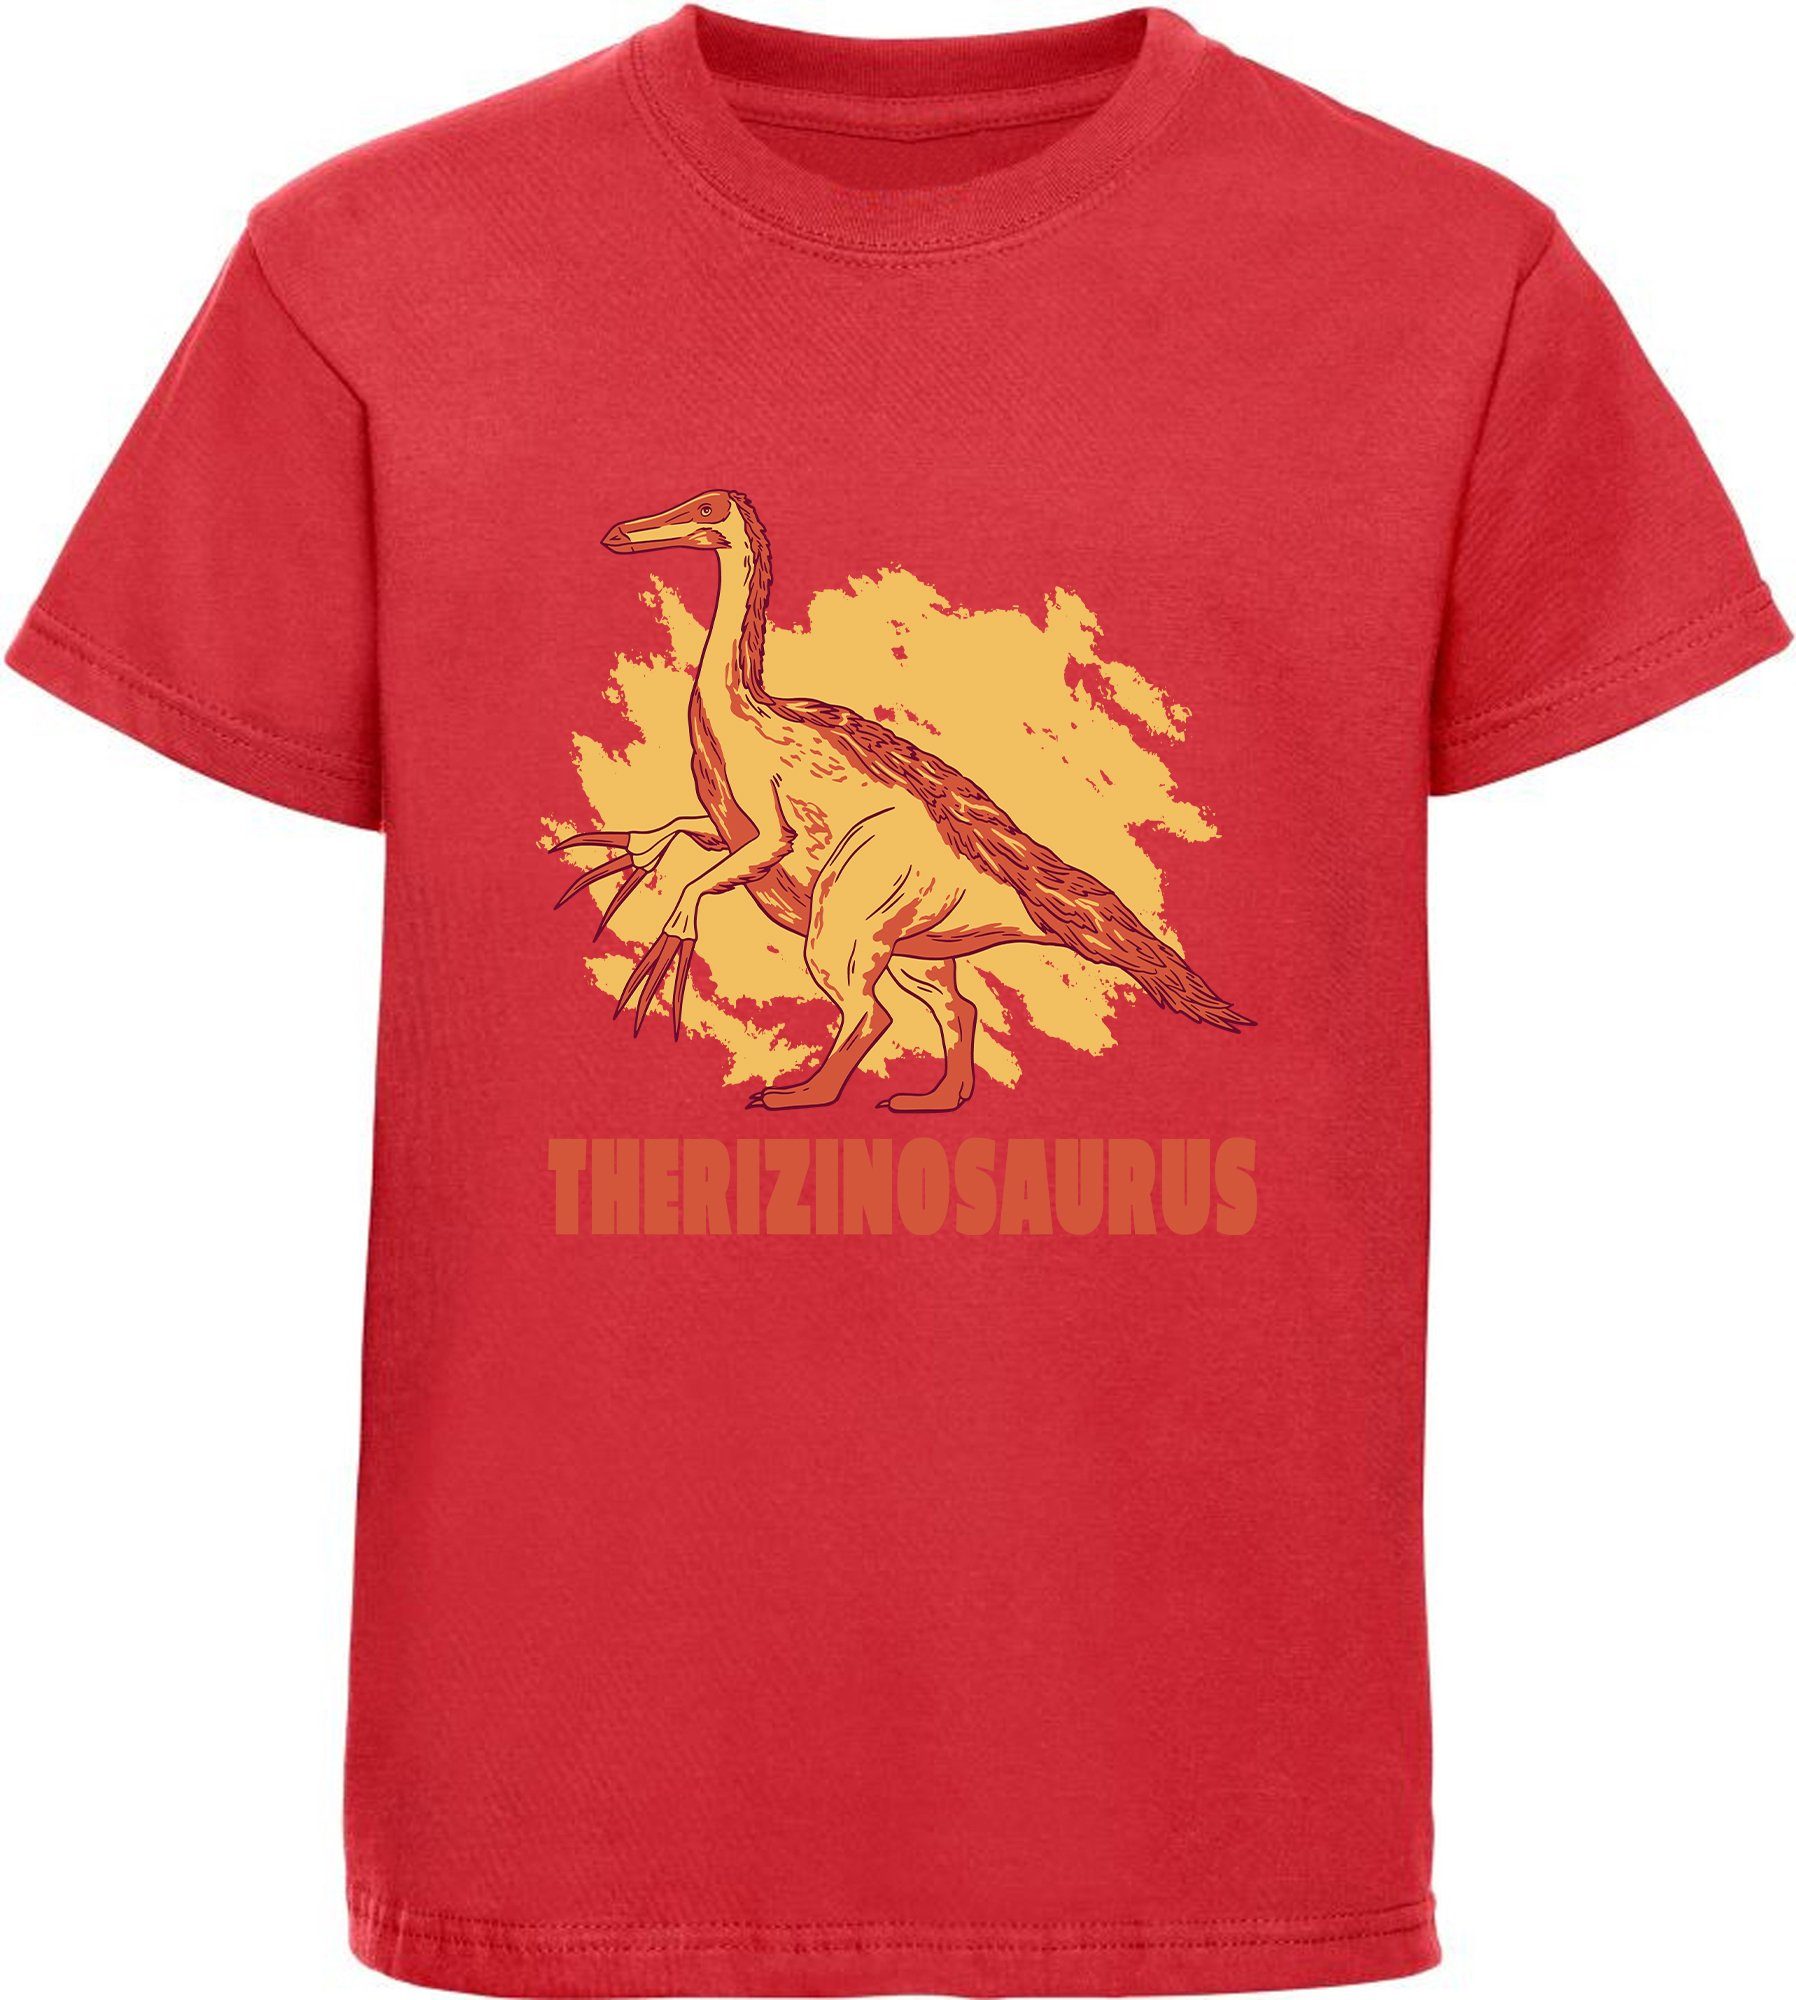 mit Print-Shirt Kinder MyDesign24 bedrucktes T-Shirt weiß, Dino, Baumwollshirt rot, schwarz, i87 mit Therizinosaurus blau,